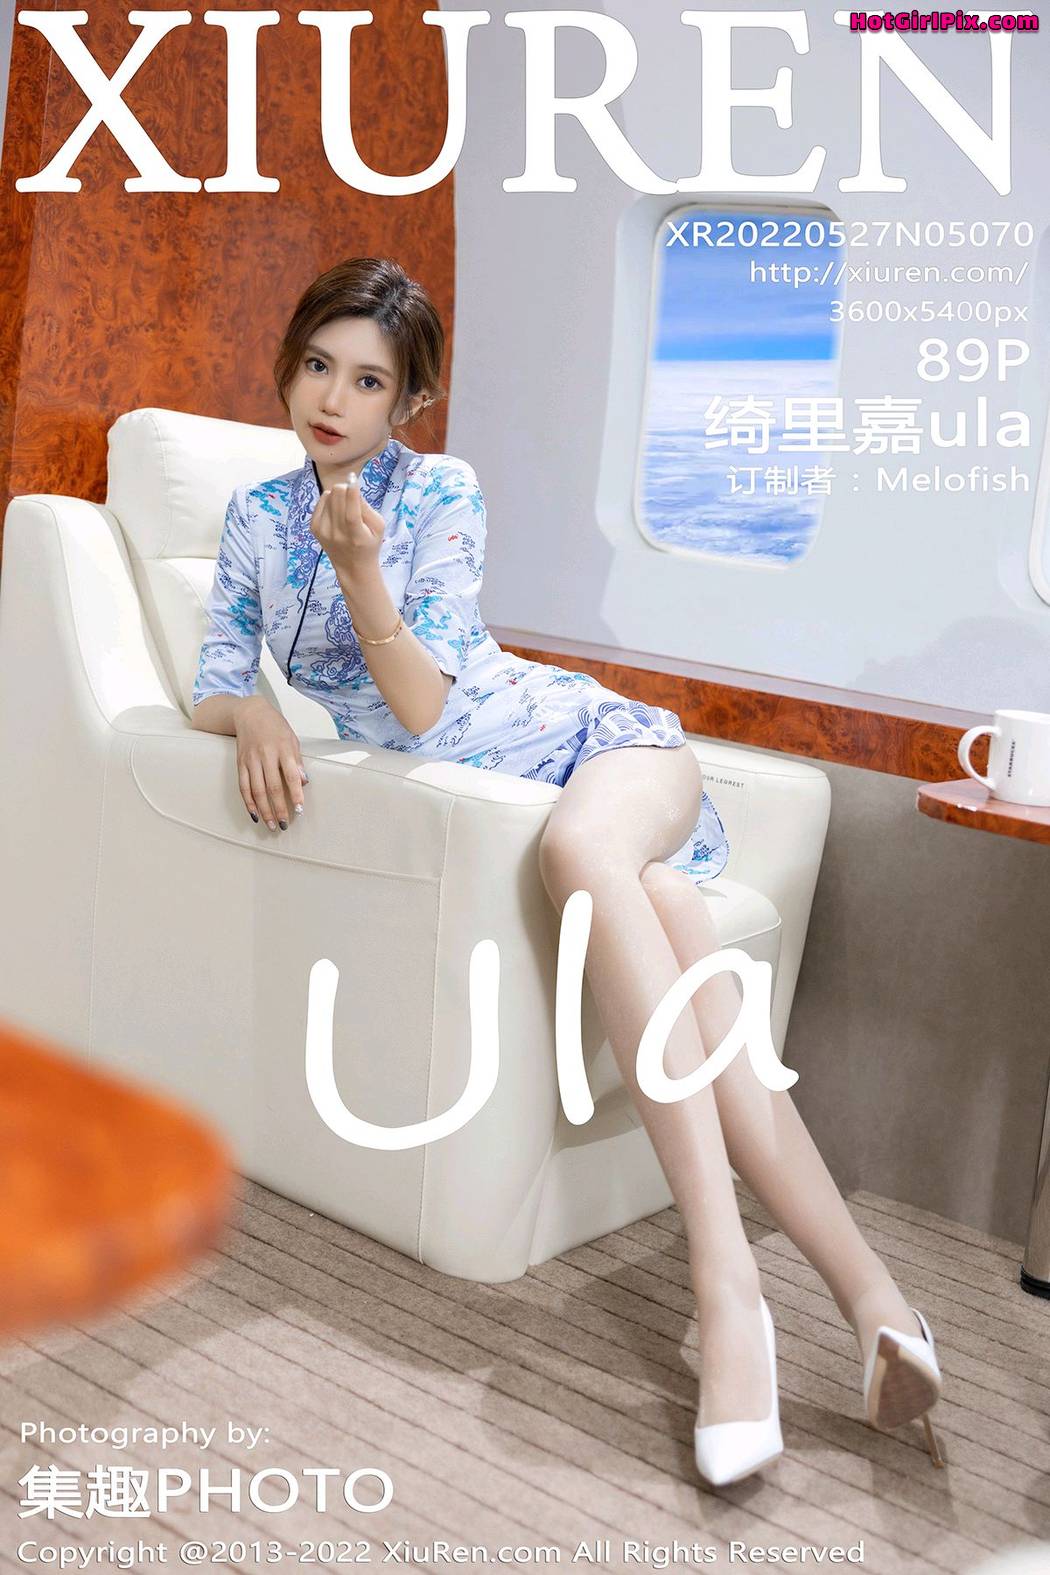 [XIUREN] No.5070 Qi Li Jia 绮里嘉ula Cover Photo